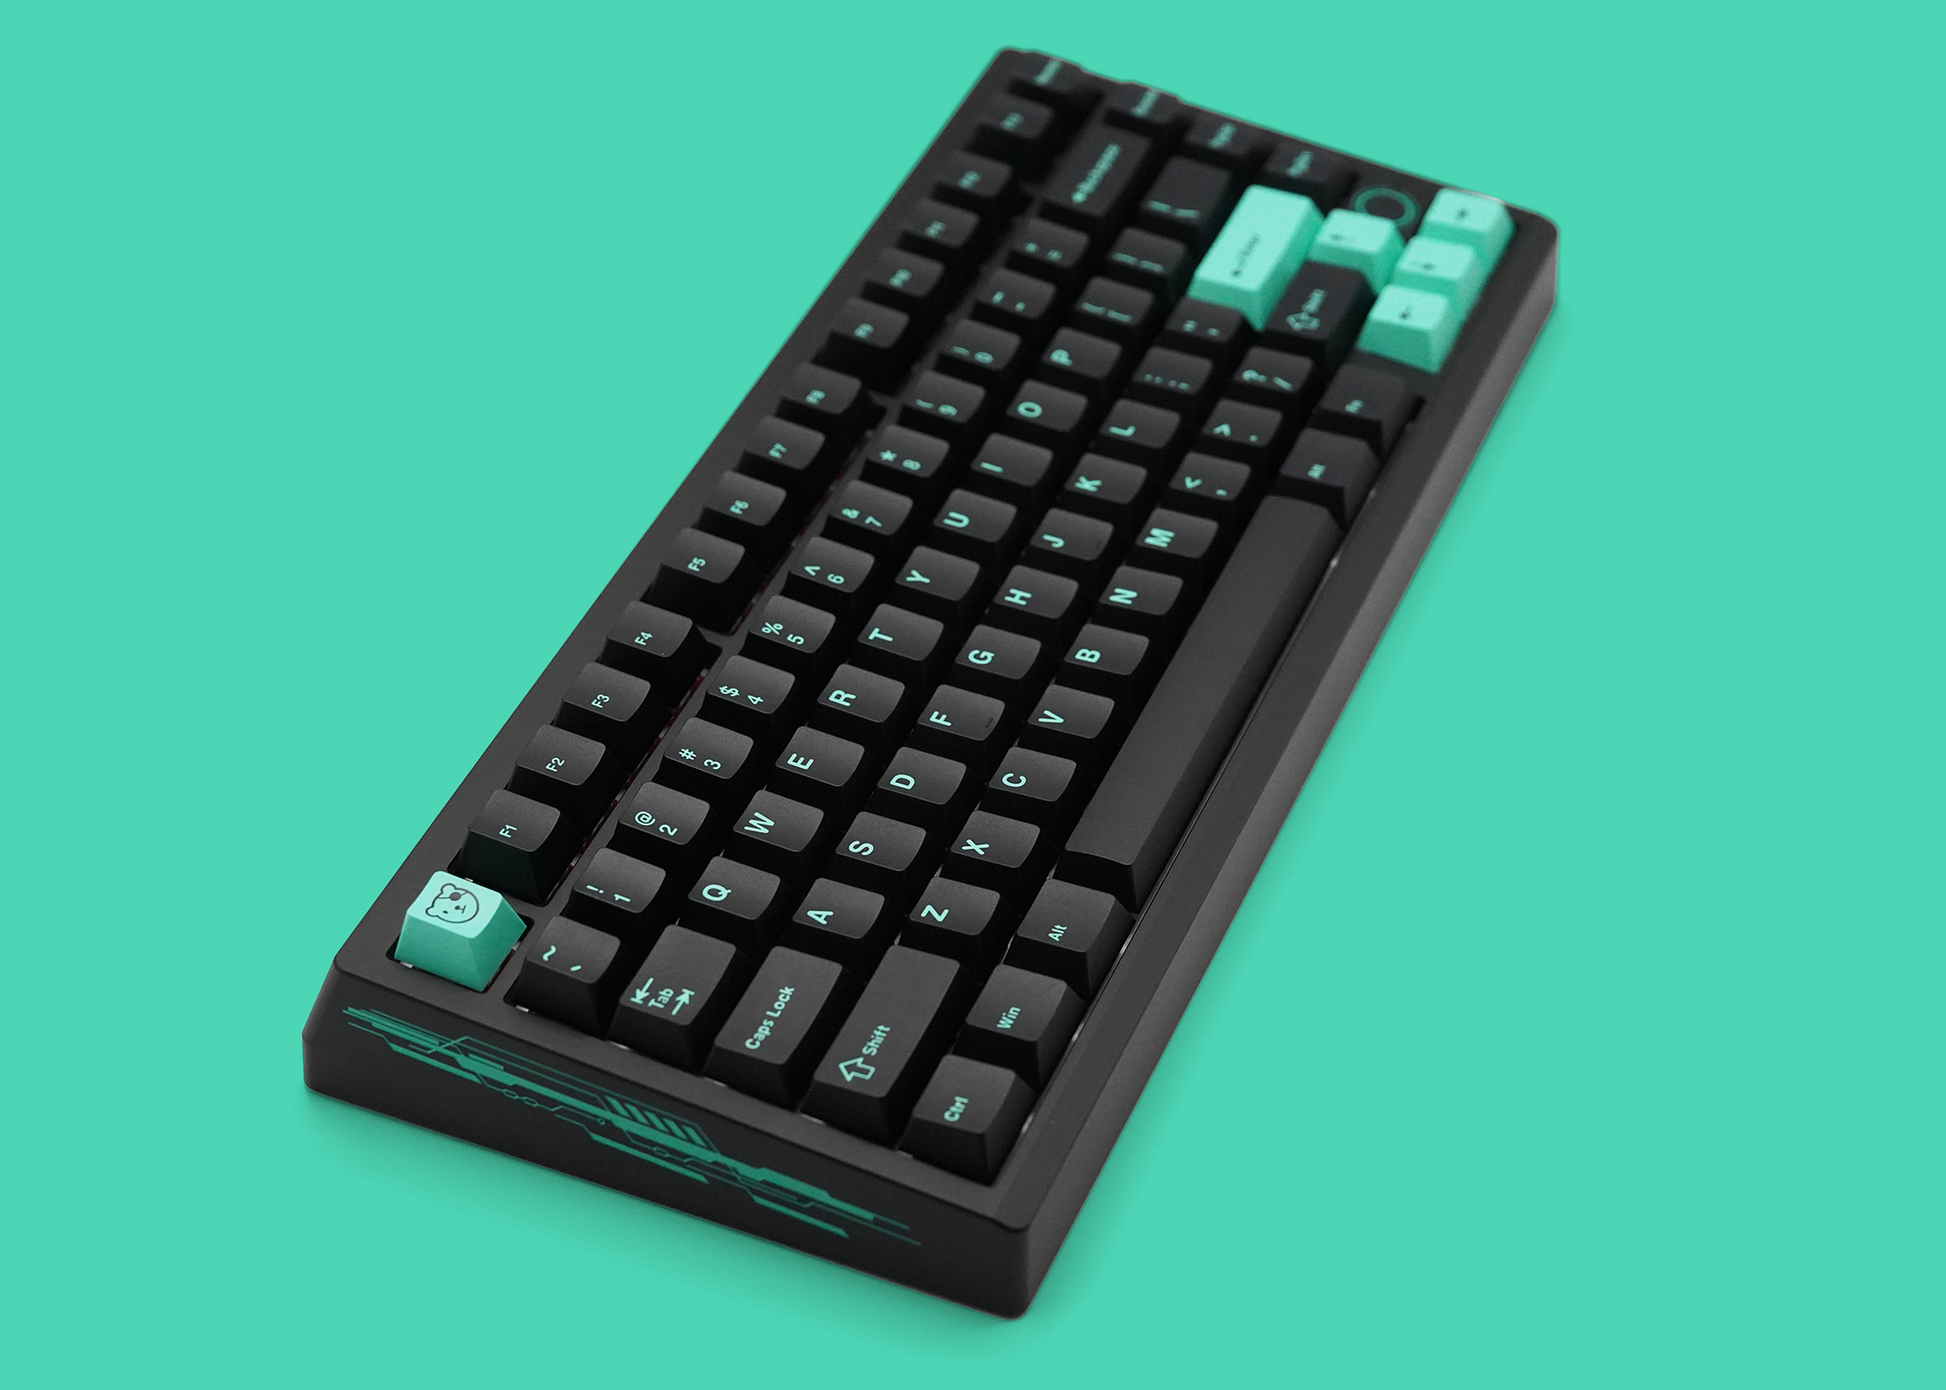 [In Stock] Meletrix BOOG75 HE Keyboard